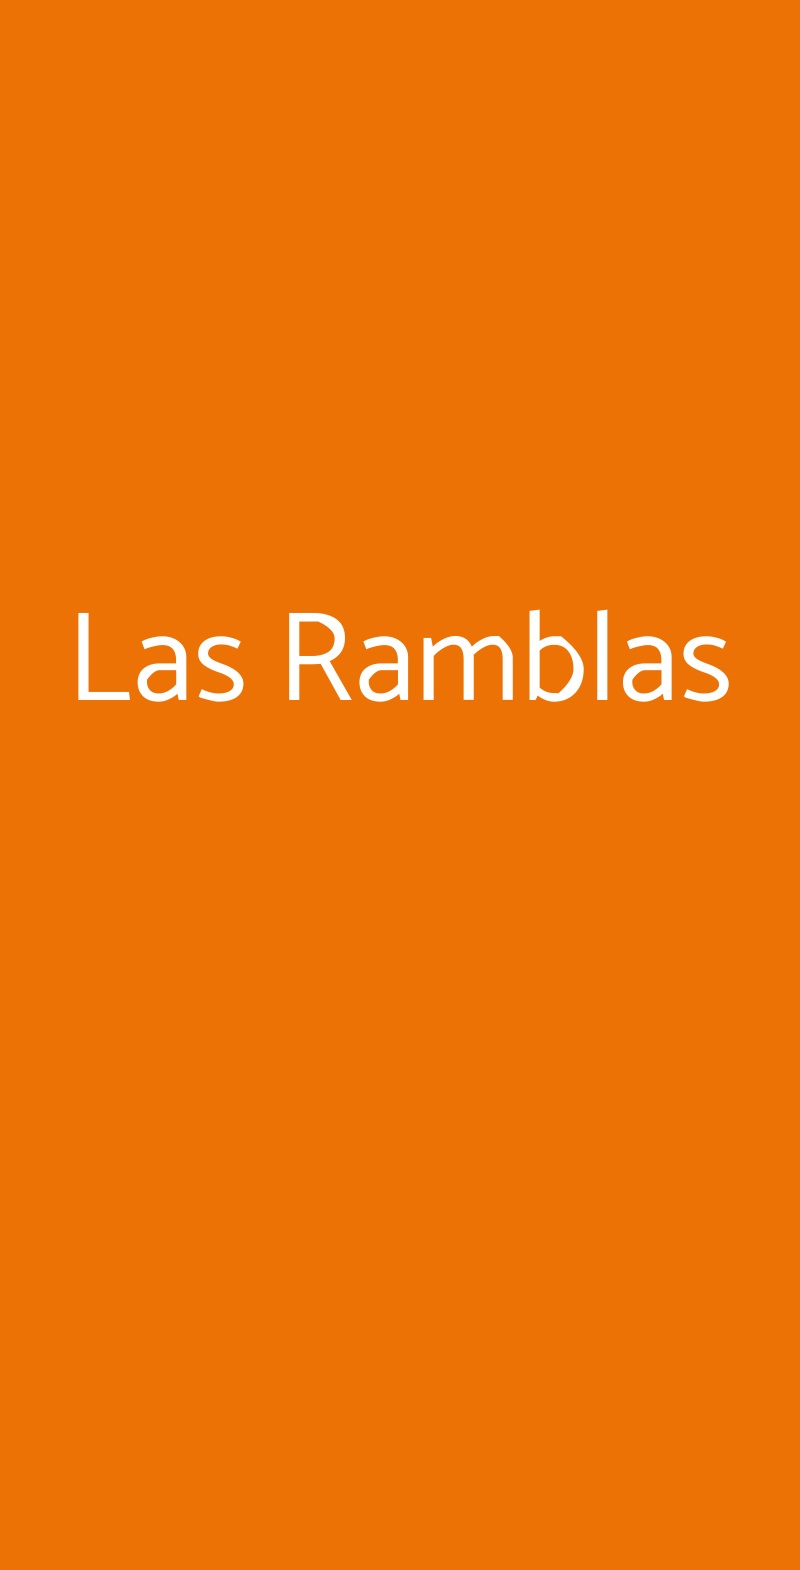 Las Ramblas Faenza menù 1 pagina